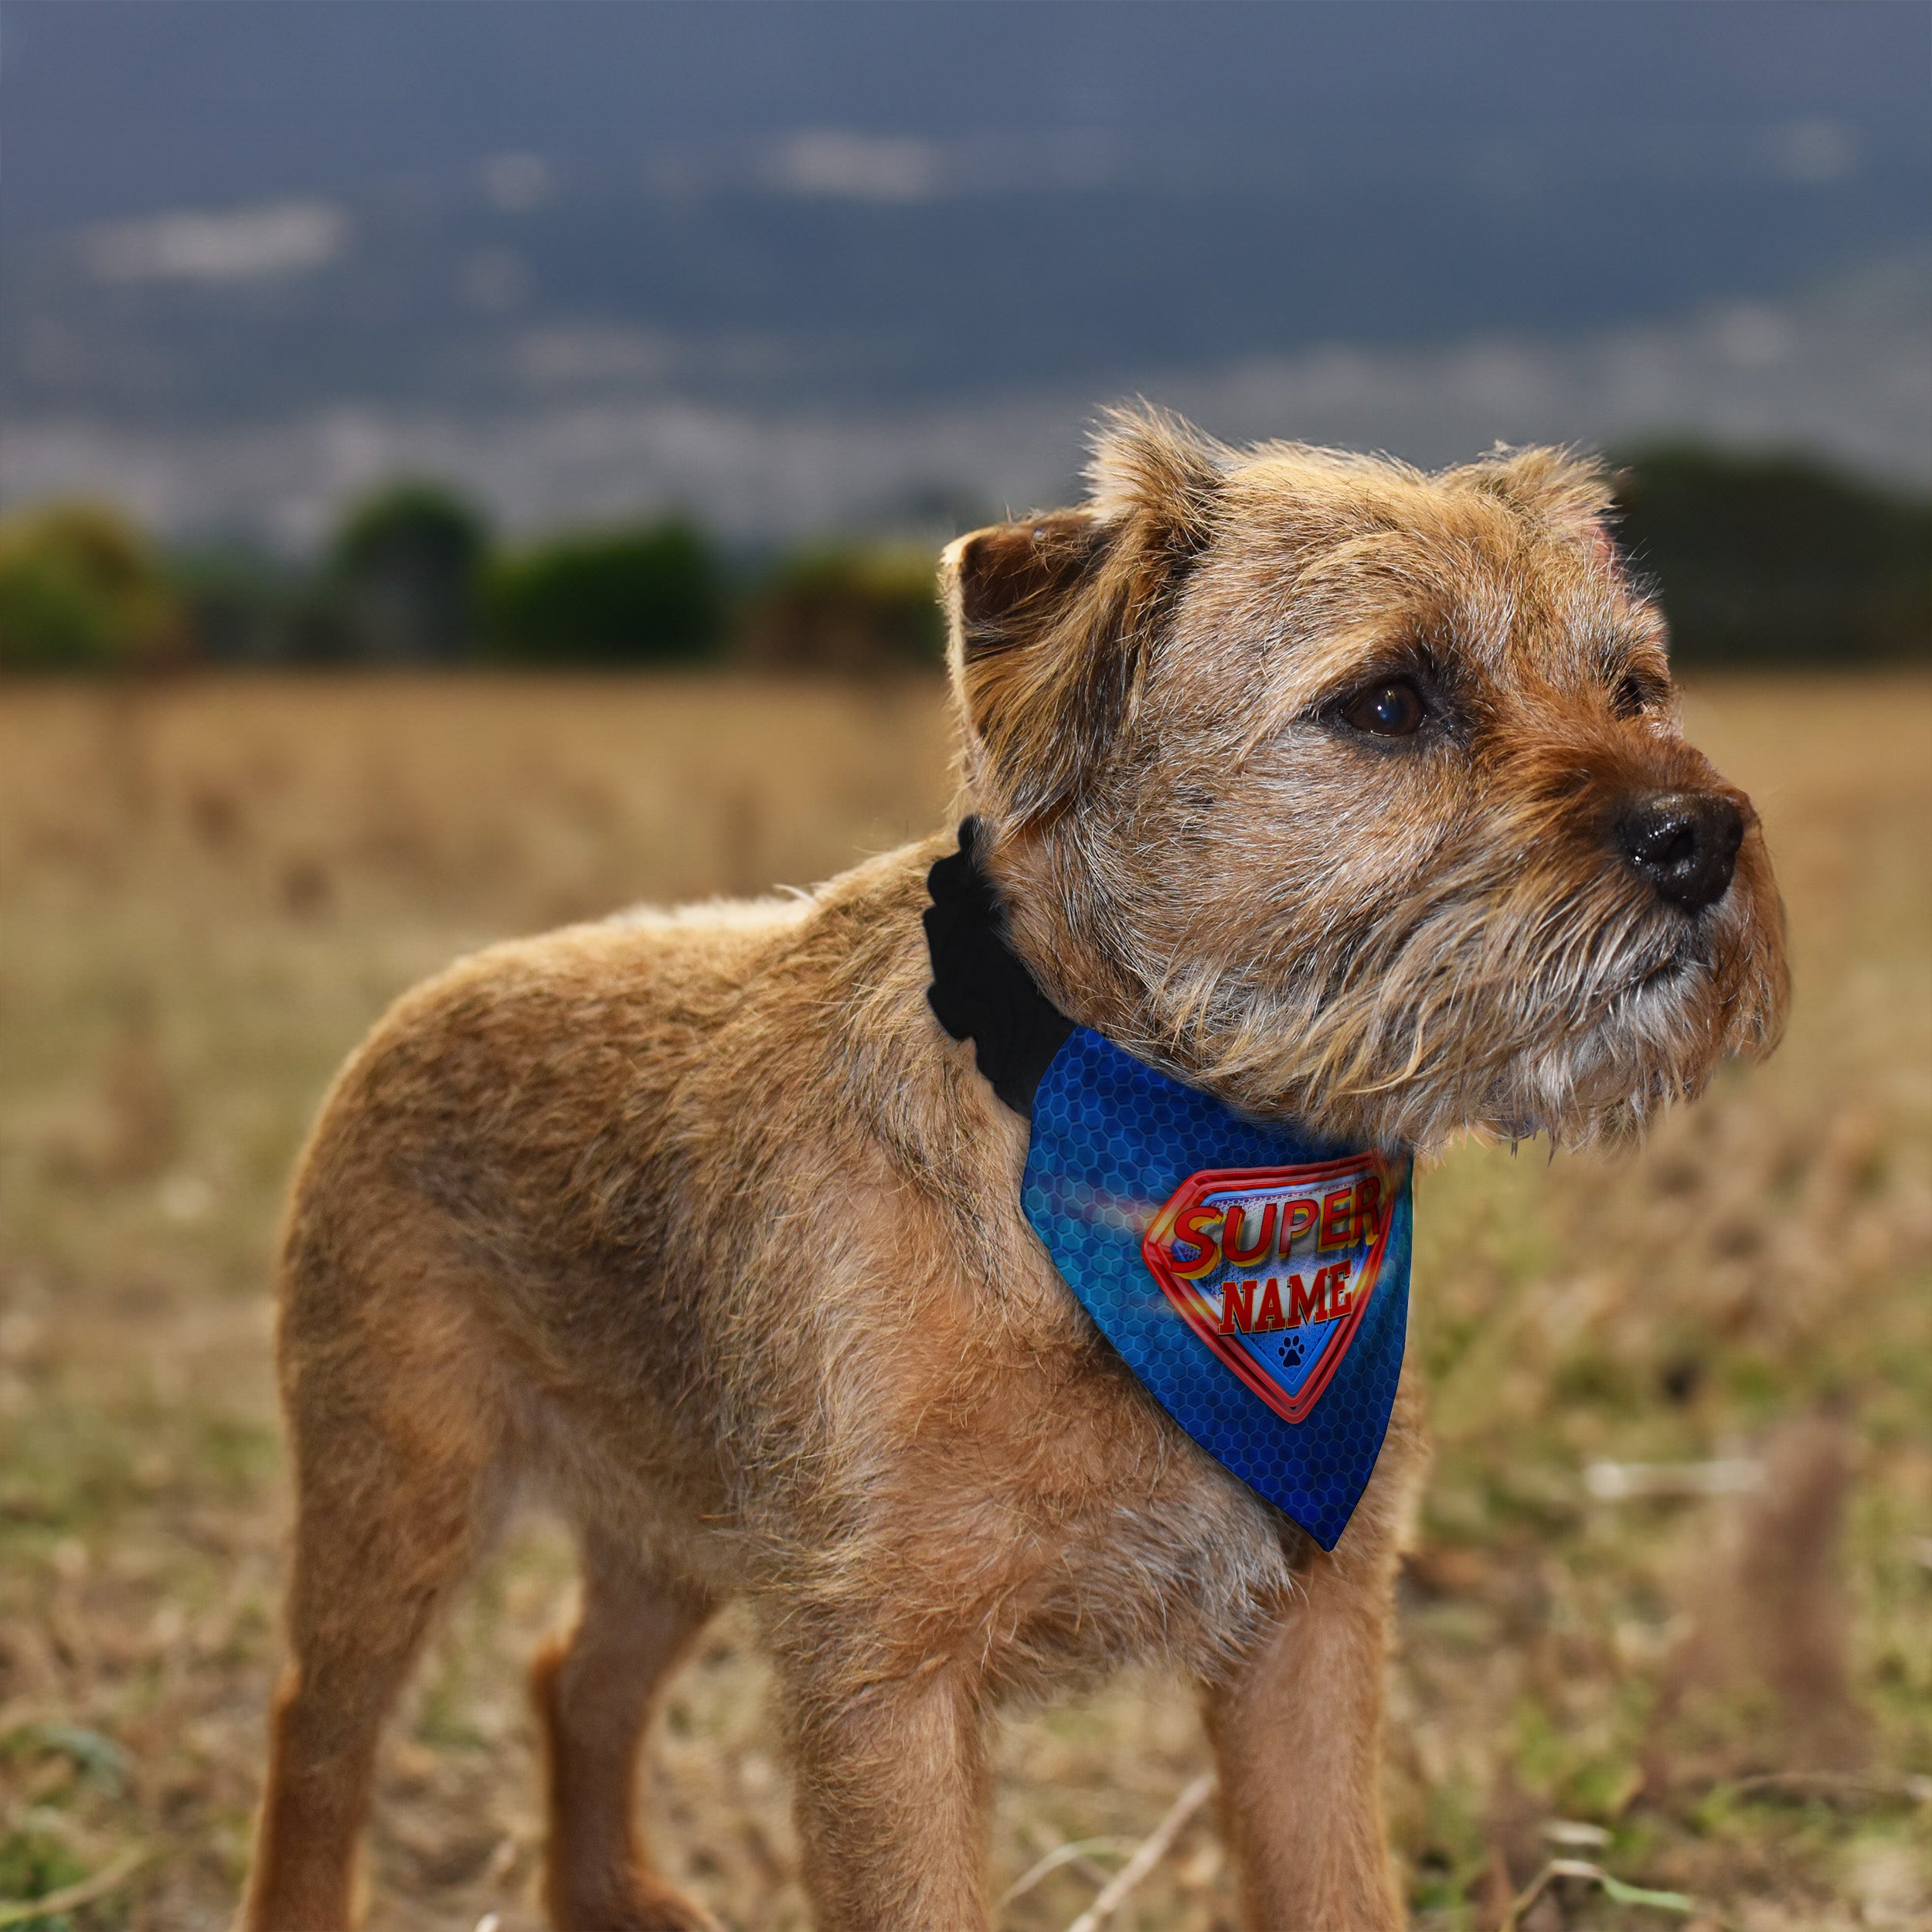 Superman - Custom Personalised Dog Bandana - 4 Sizes